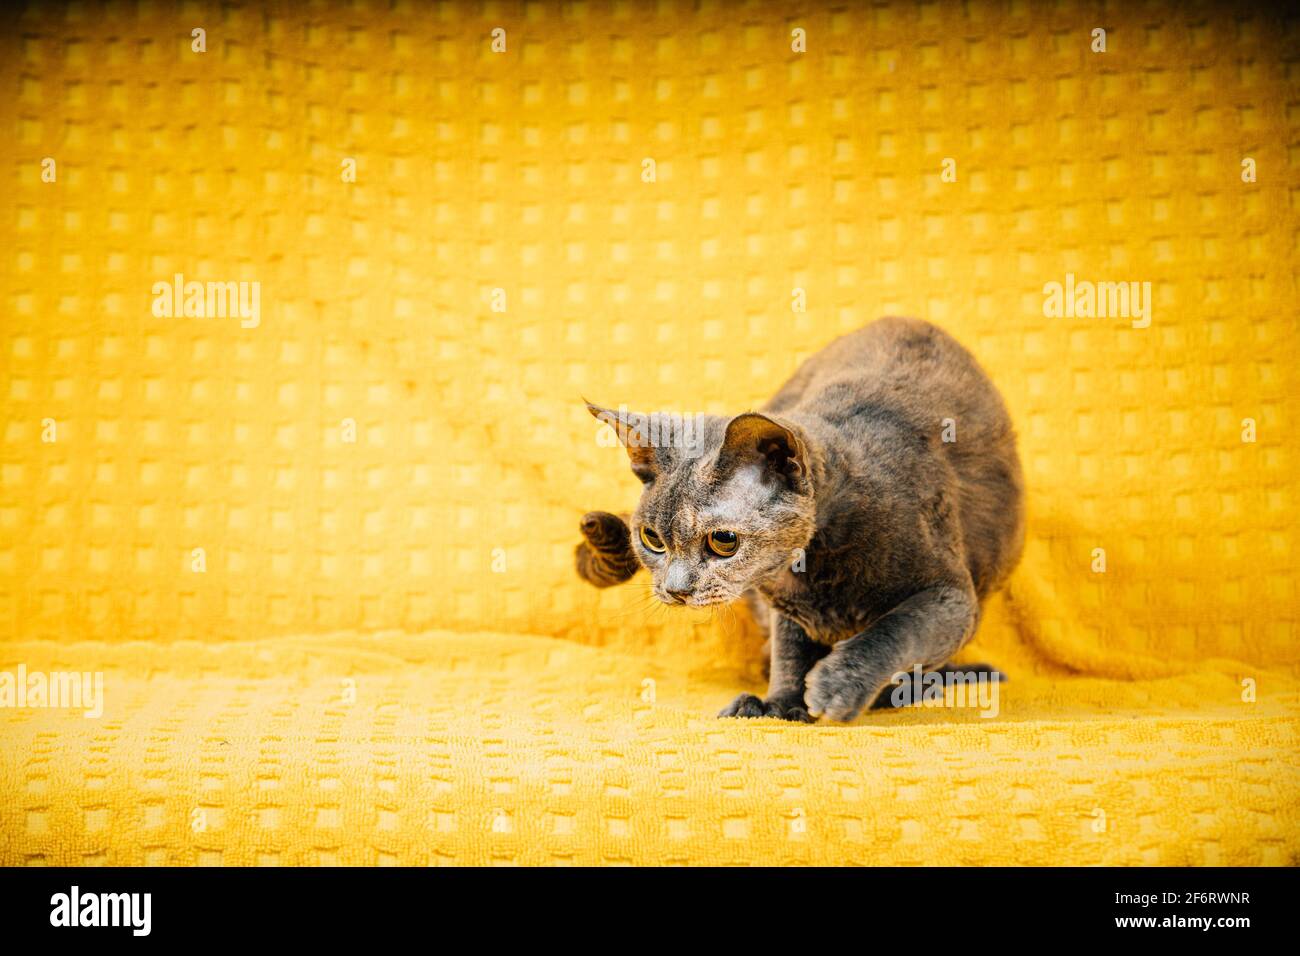 Neugierig Verspielt Junge Erwachsene Grau Grau Devon Rex Cat. Kurzhaarige Katze der englischen Rasse auf gelber Plaid Hintergrund. Kurzhaar Tierkatzenjagd. Stockfoto